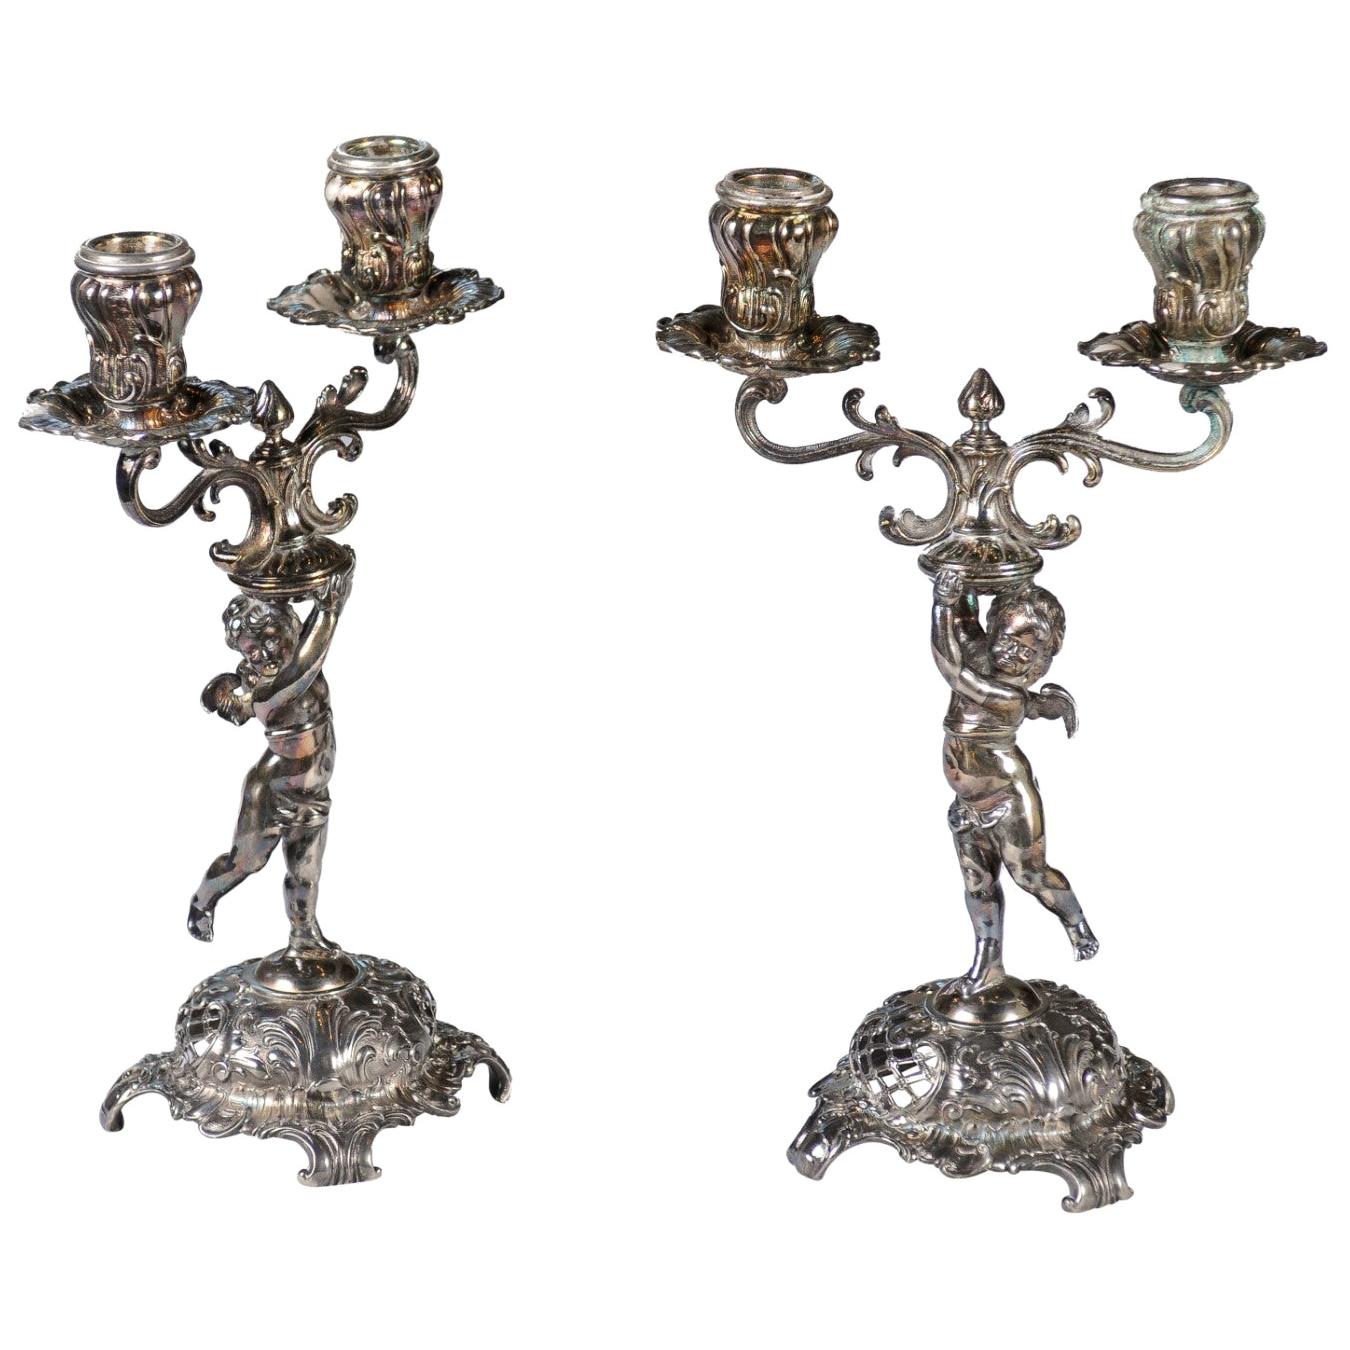 Paire de candélabres chérubins WMF plaqués argent de la fin du 19ème siècle de style Jugendstil allemand